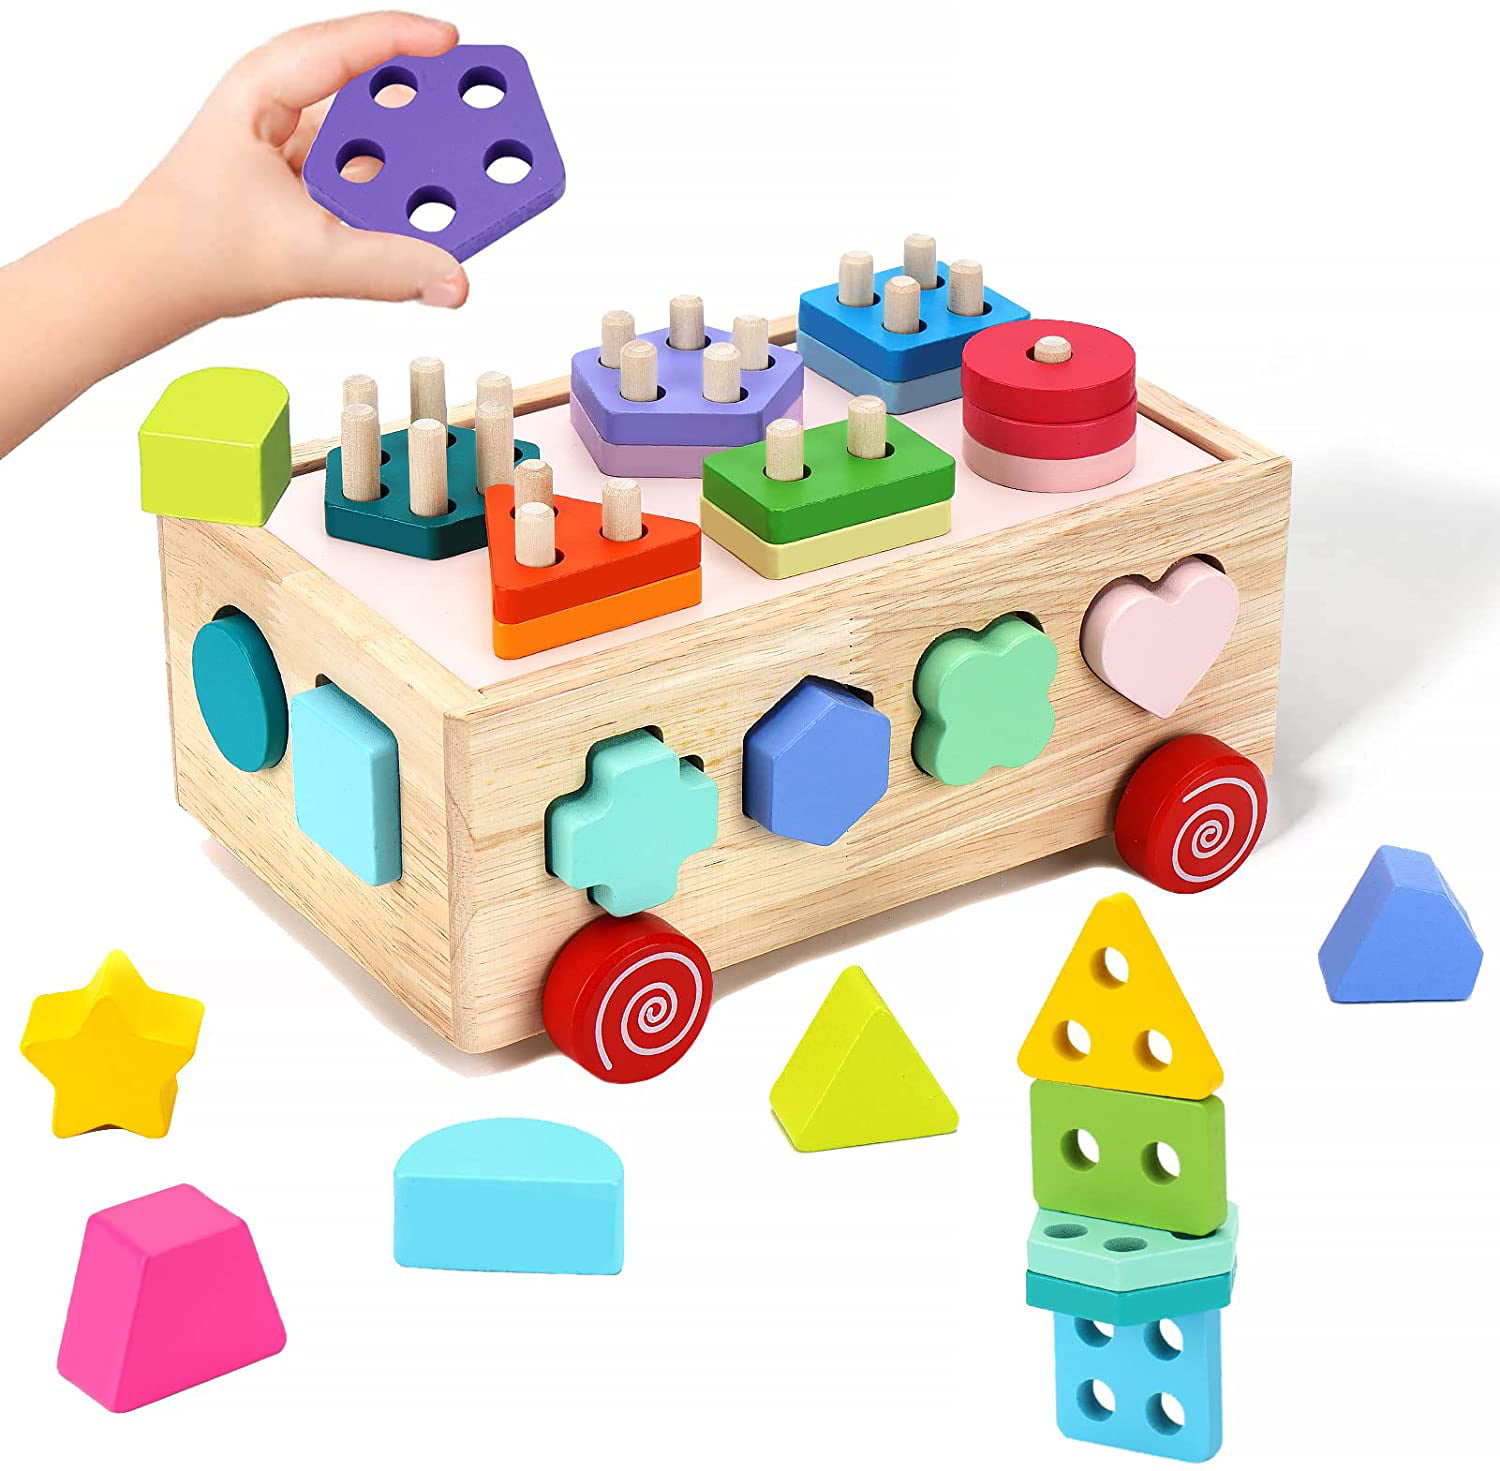 NEW Wooden Montessori Geometric Shape Matching Blocks Kids Educational Toy Gifts 